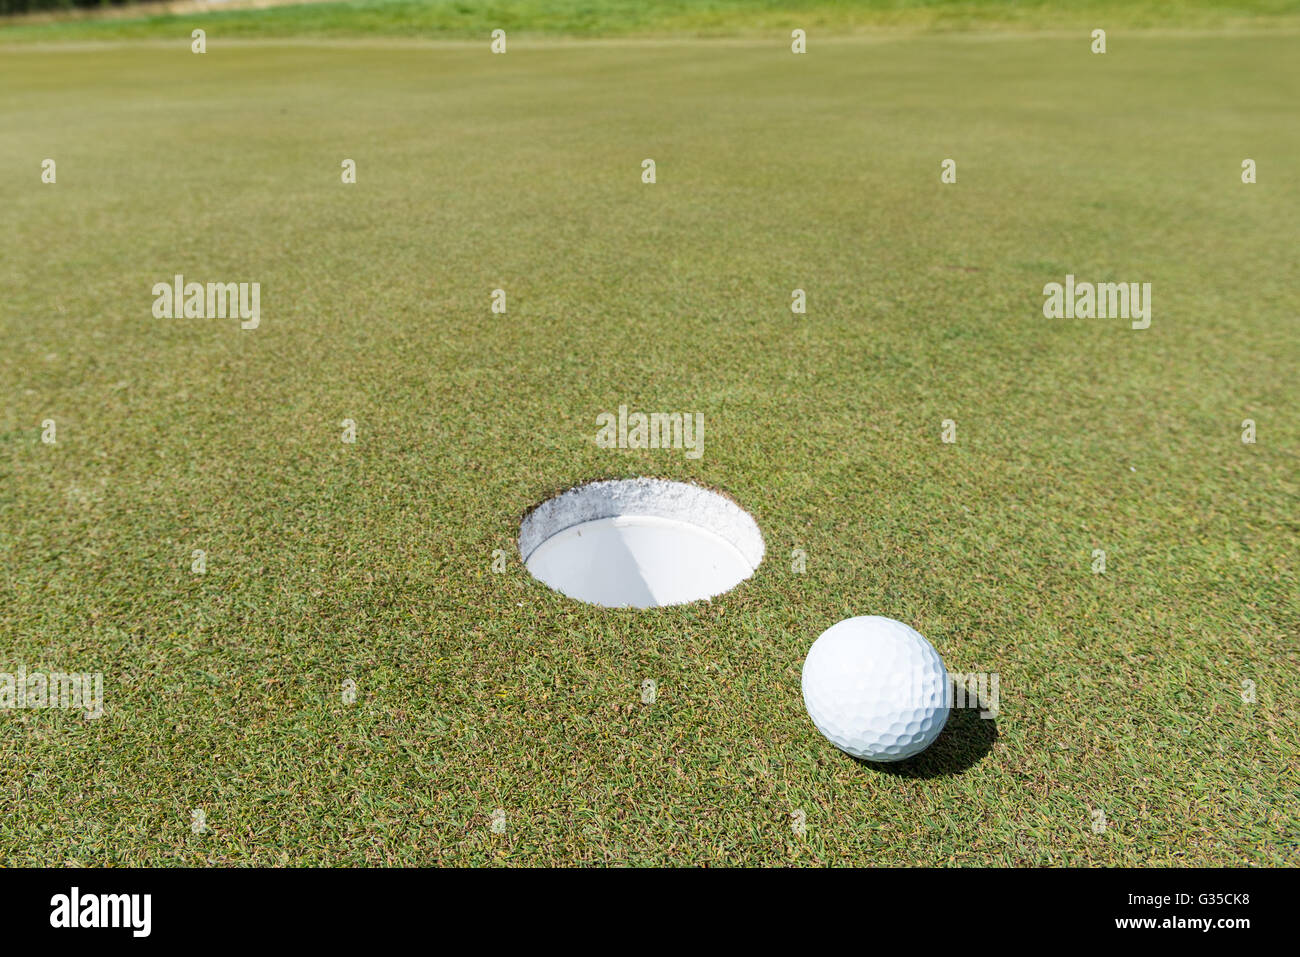 Buca da golf immagini e fotografie stock ad alta risoluzione - Alamy